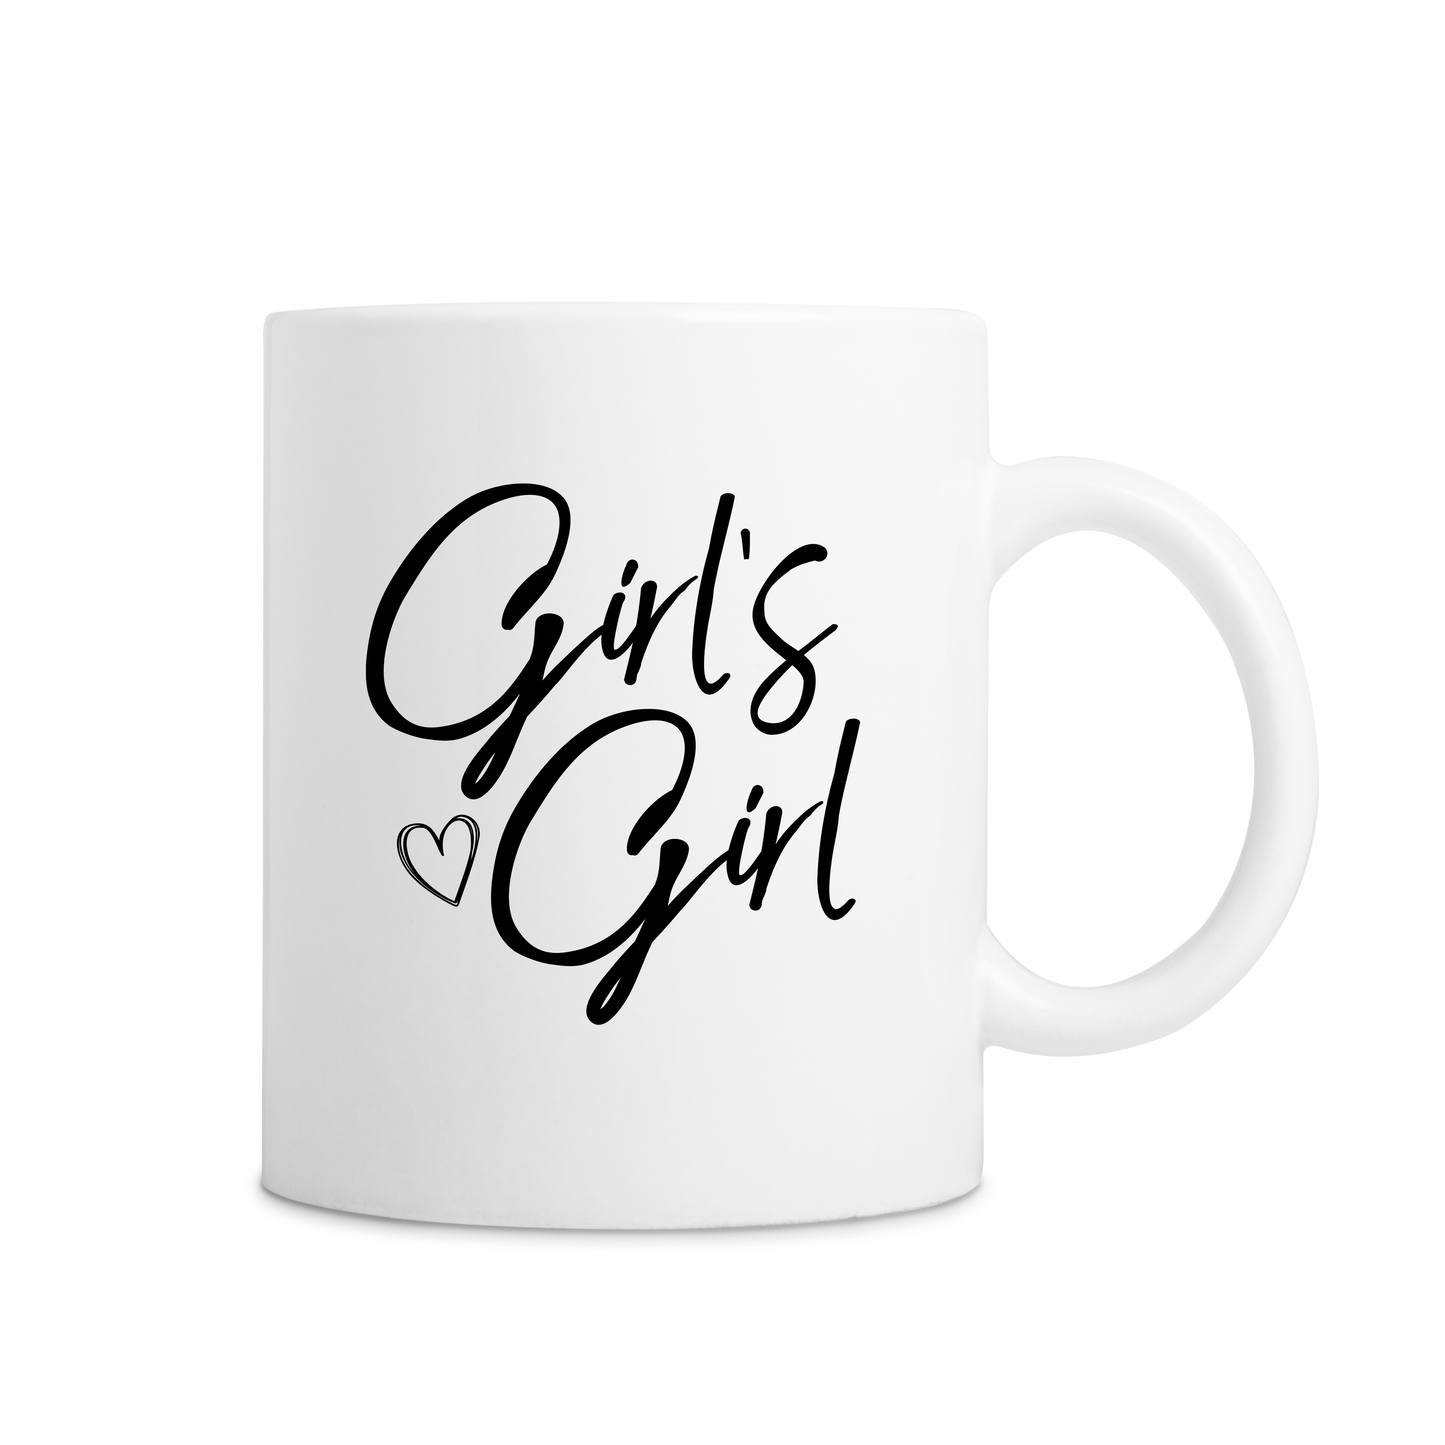 Girl's Girl Mug - White